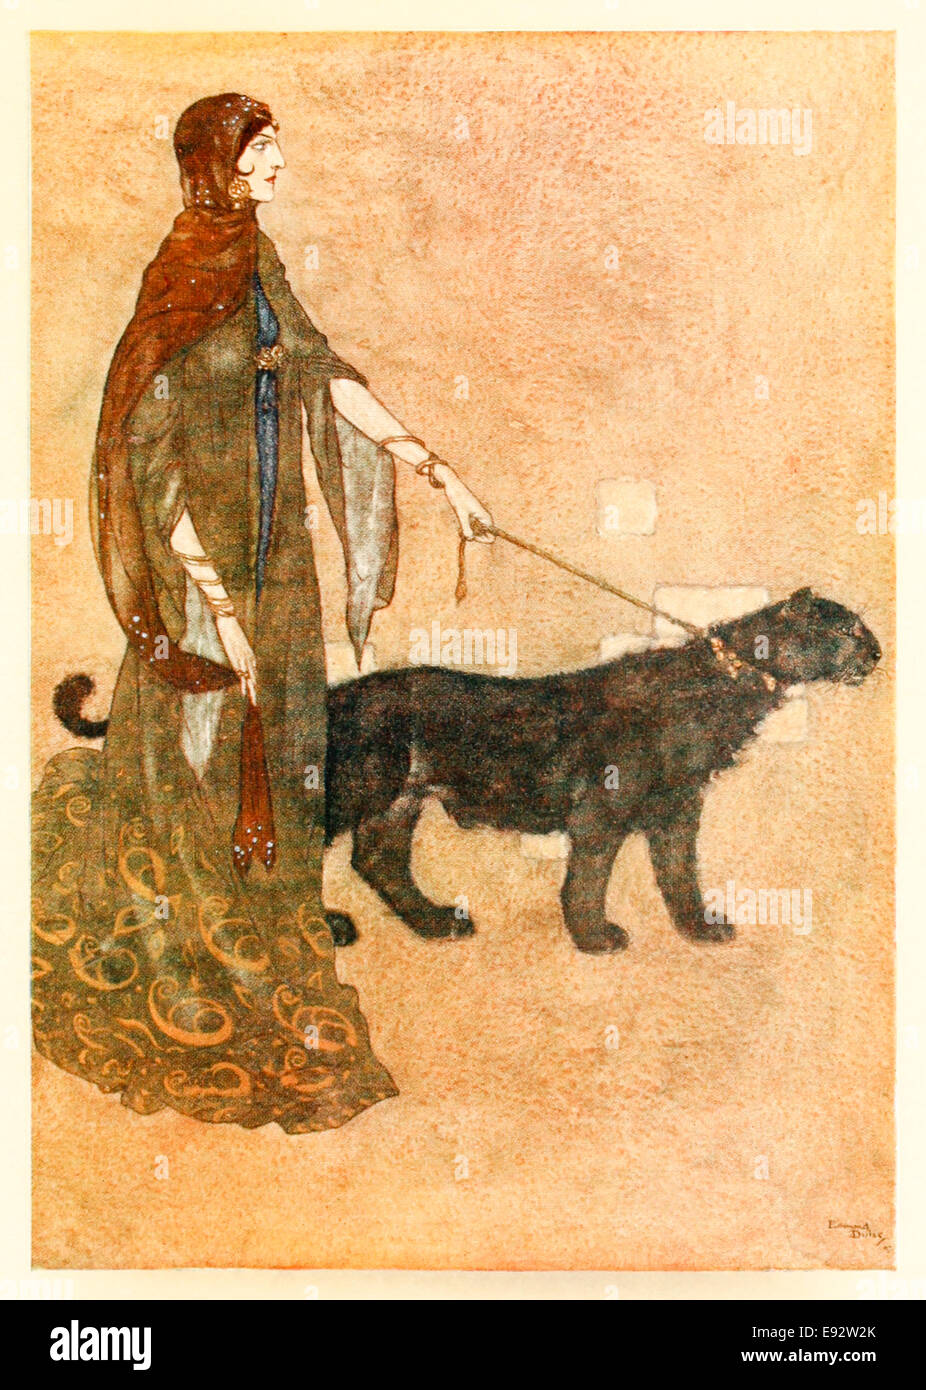 Edmund Dulac - L'illustration à partir de témoignages de l'Arabian Nights'. Voir la description pour plus d'informations Banque D'Images